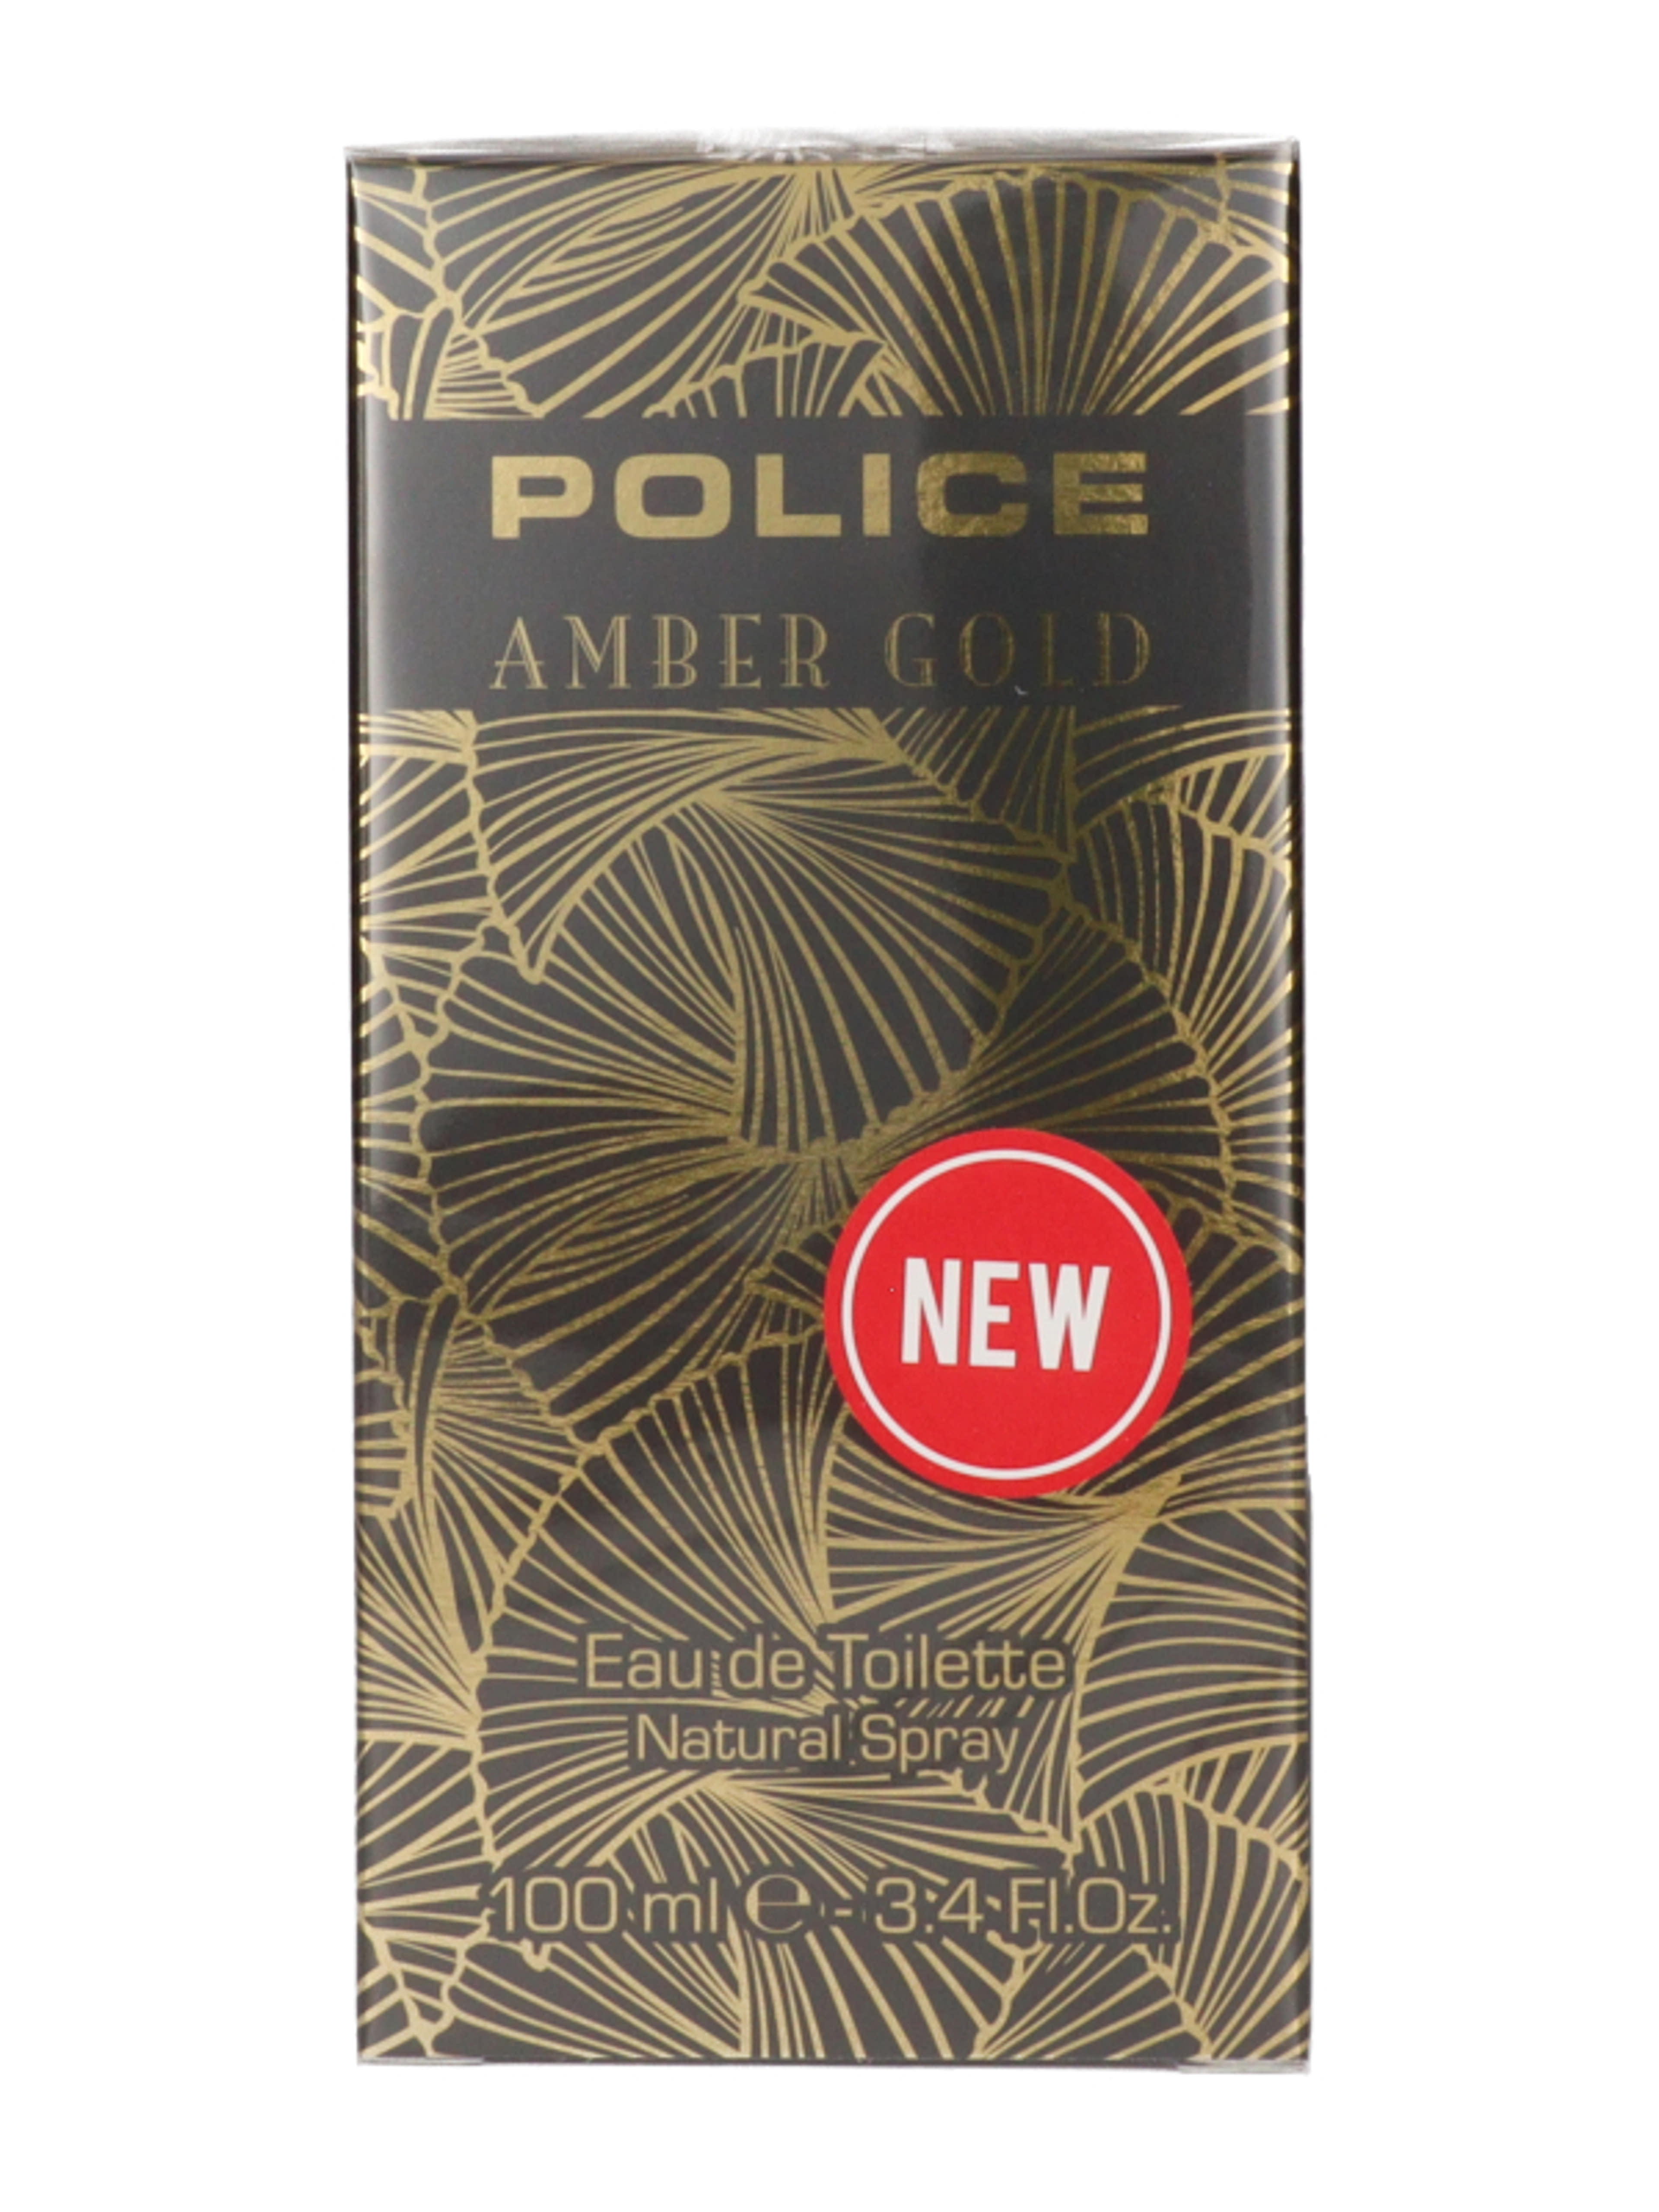 Police Amber Gold for Women Eau de Toilette - 100 ml